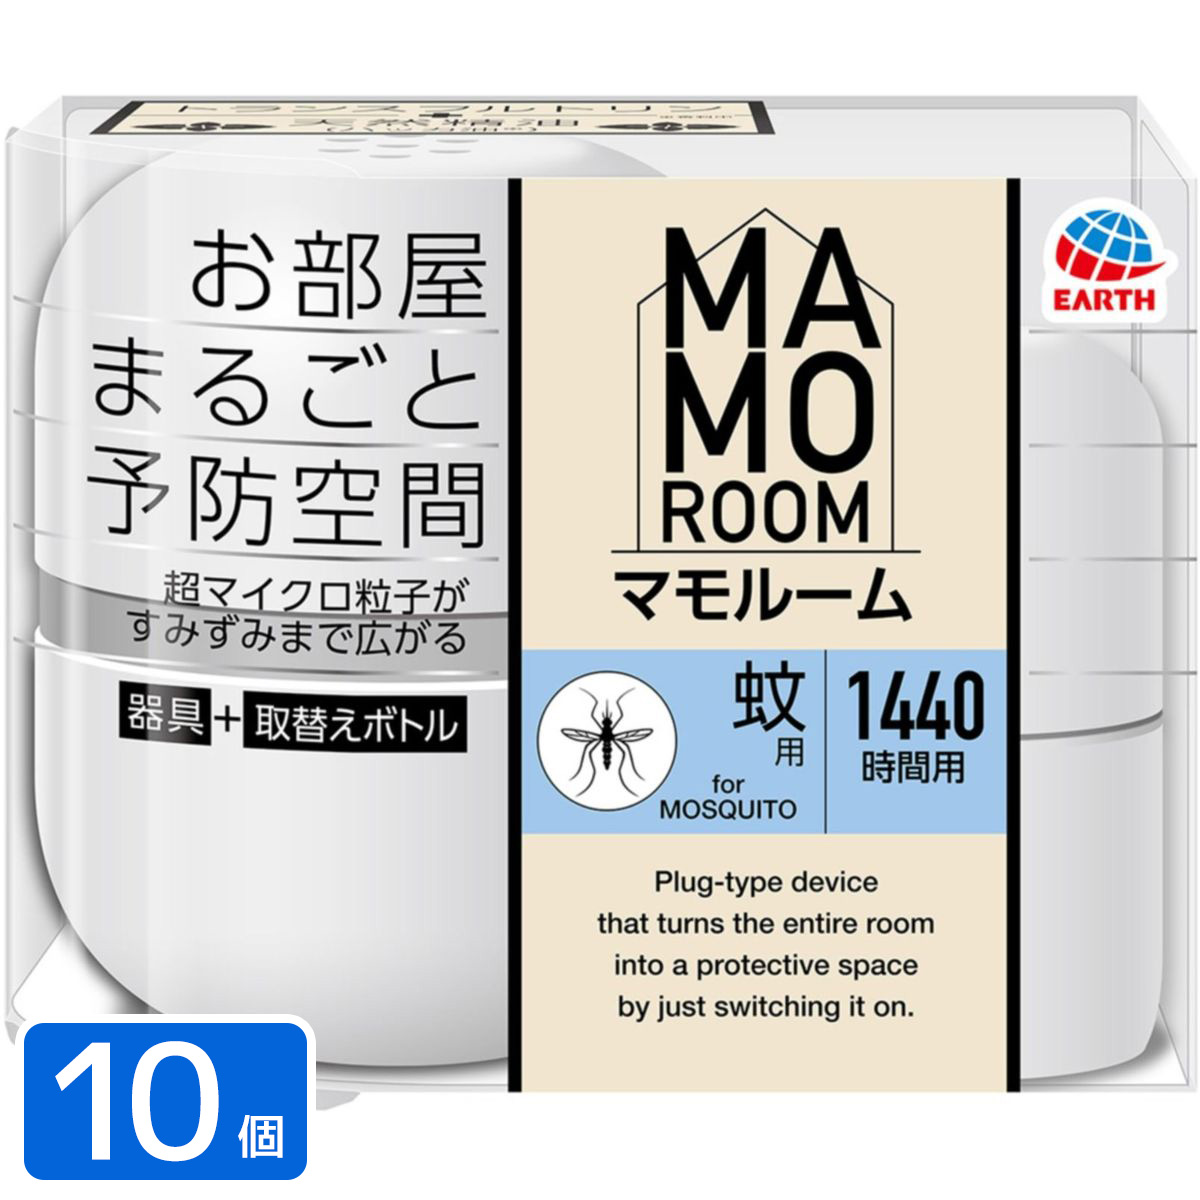 マモルーム 蚊用 1440時間用 器具セット 殺虫剤×10個